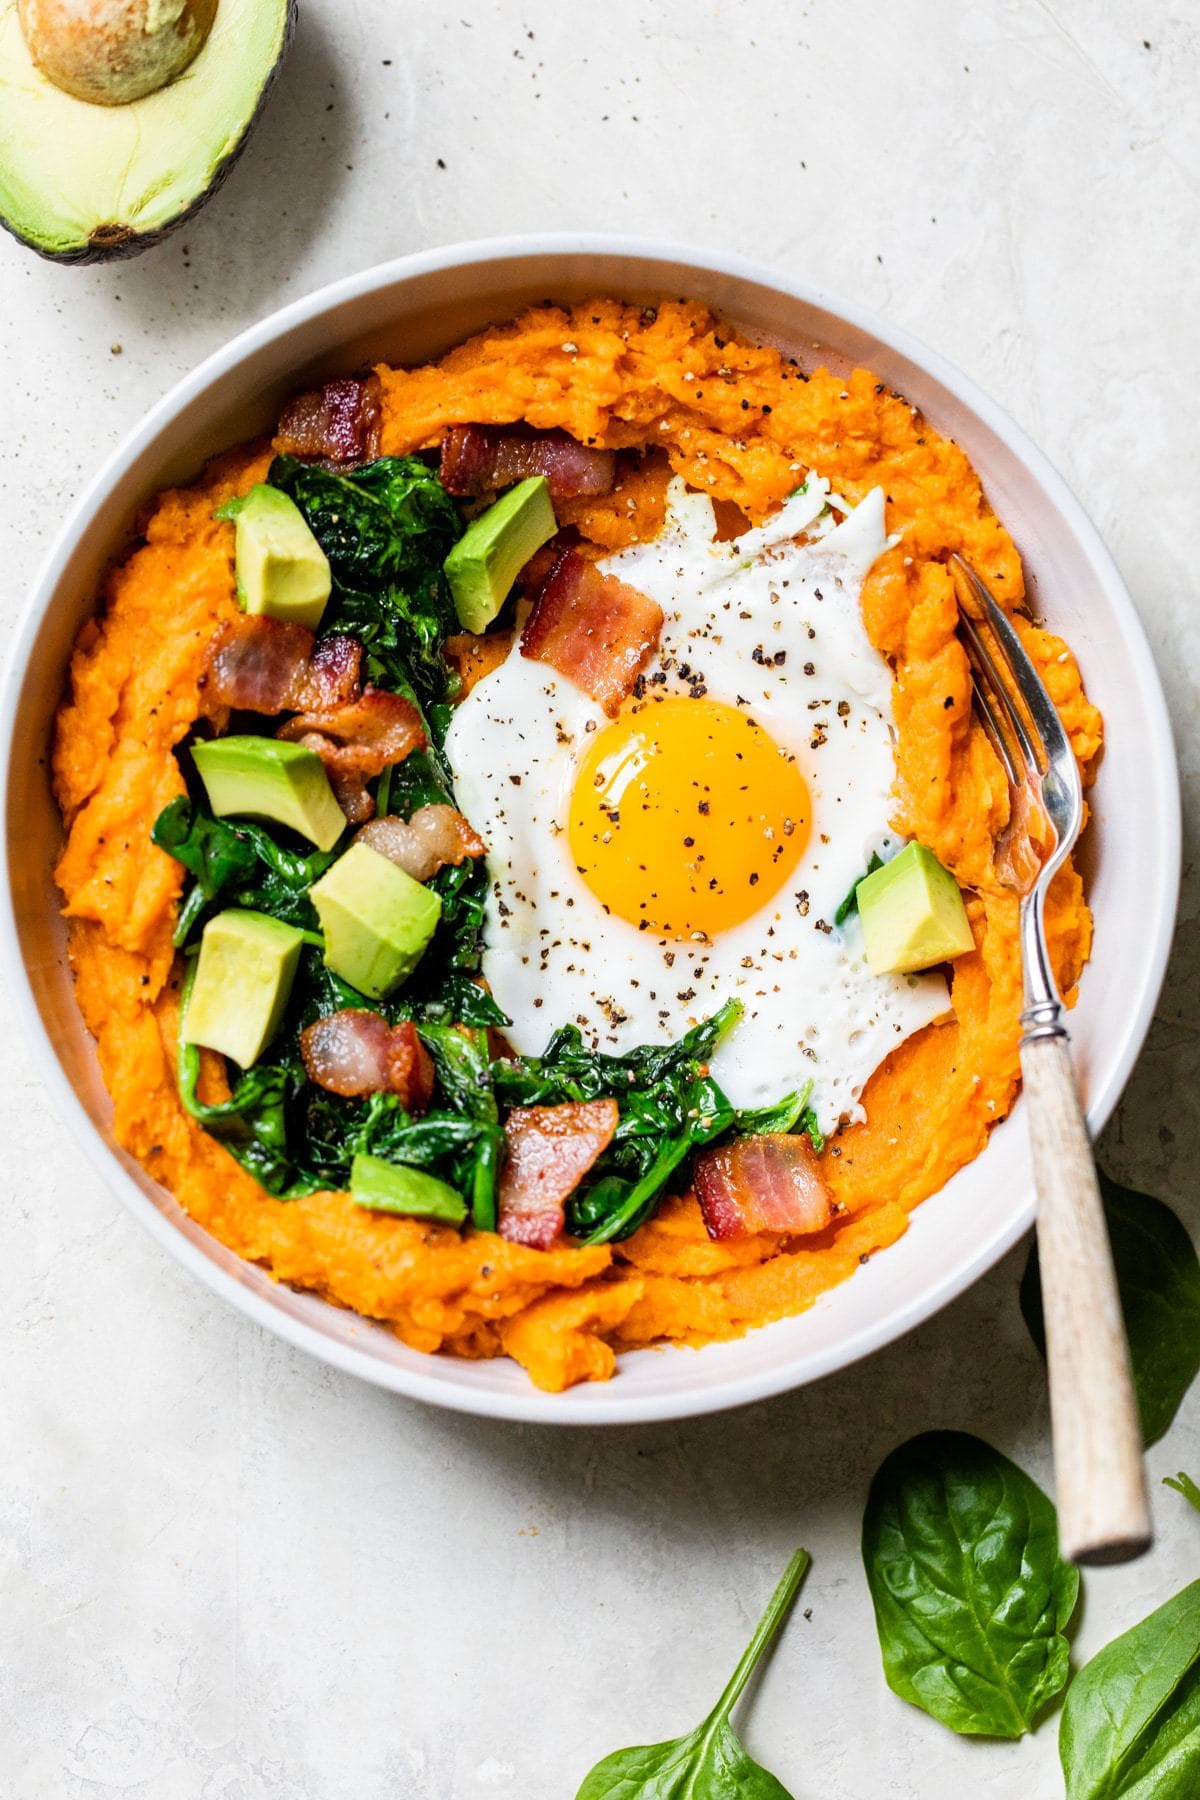 17 Low FODMAP Breakfast Ideas - Savory Sweet potato breakfast bowls